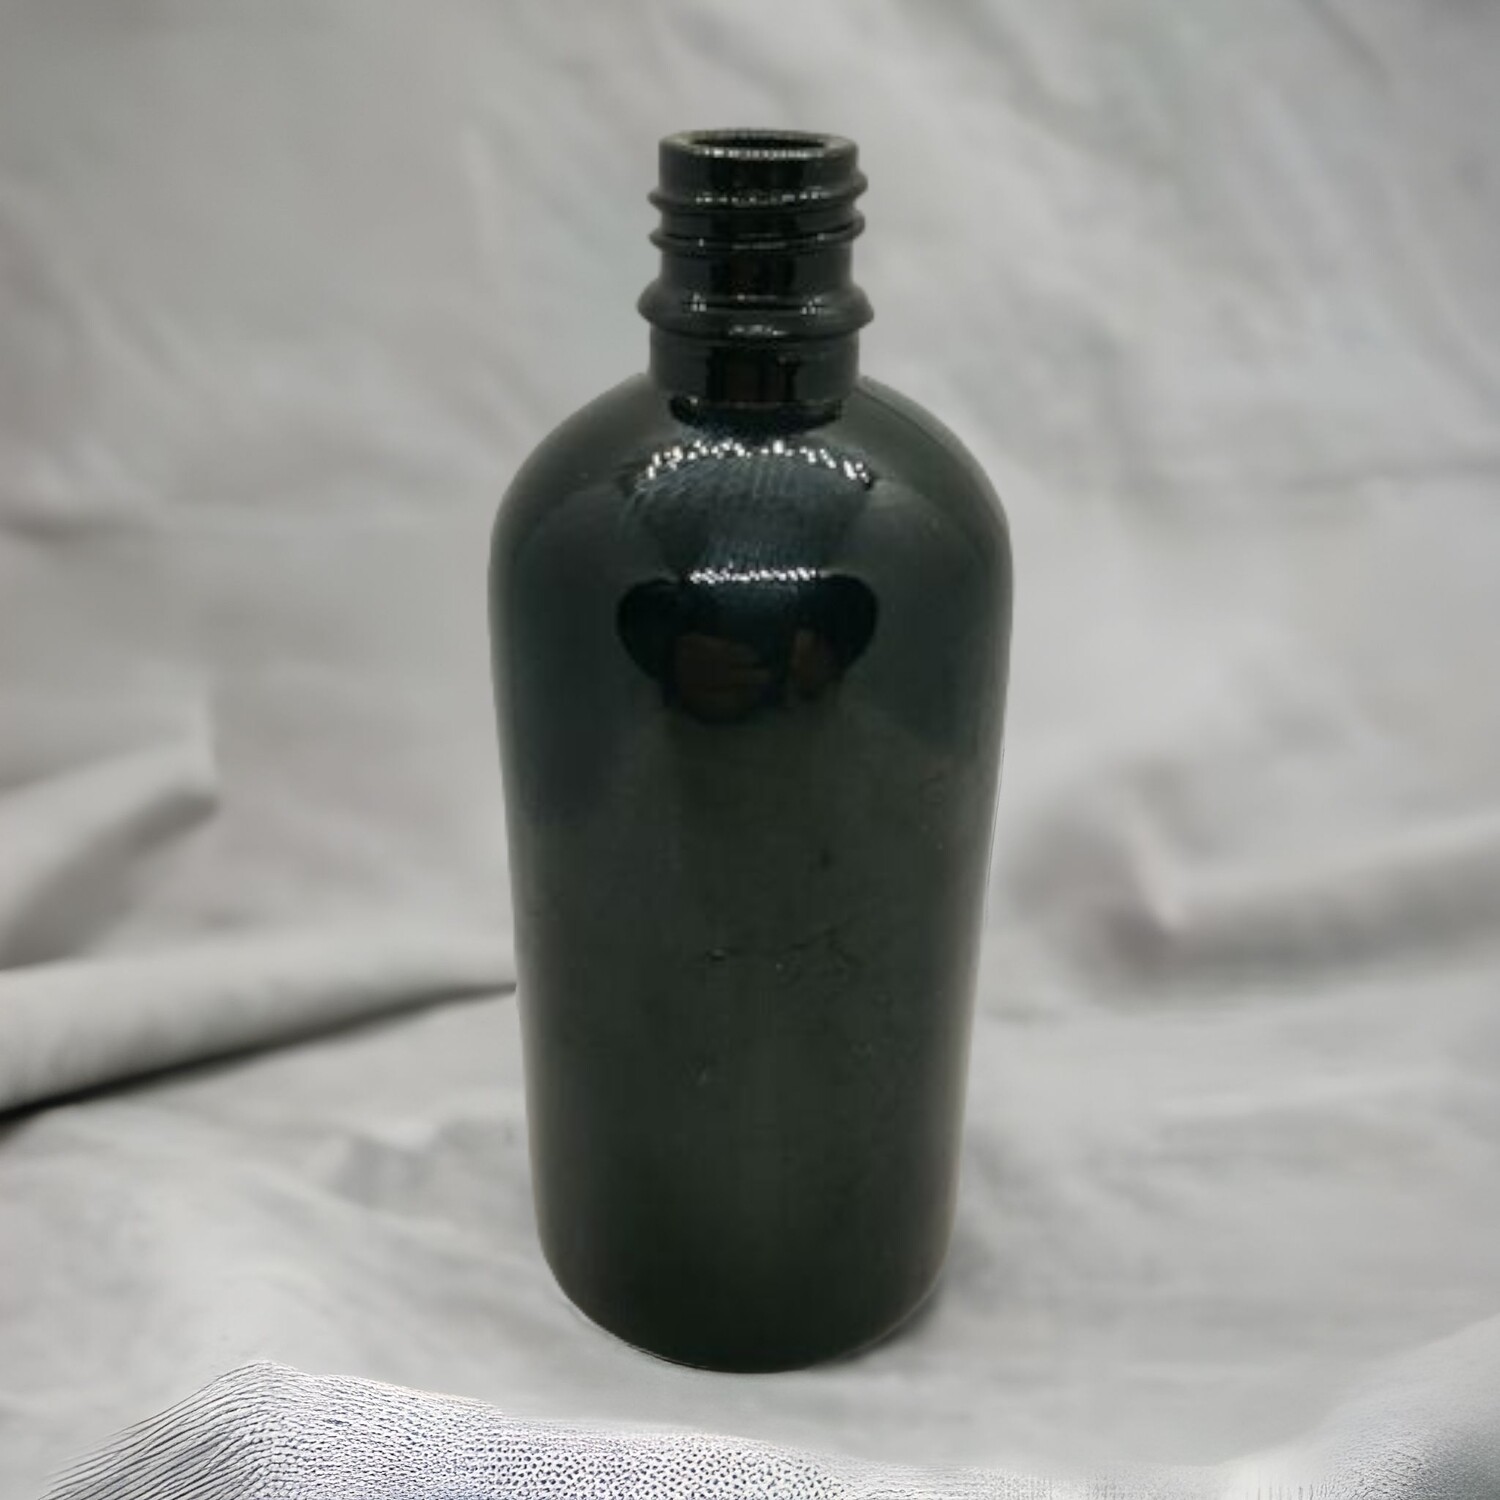 100ml GLOSS BLACK Boston 18mm Neck Glass Bottle Only - BULK Pack of 70 Bottles